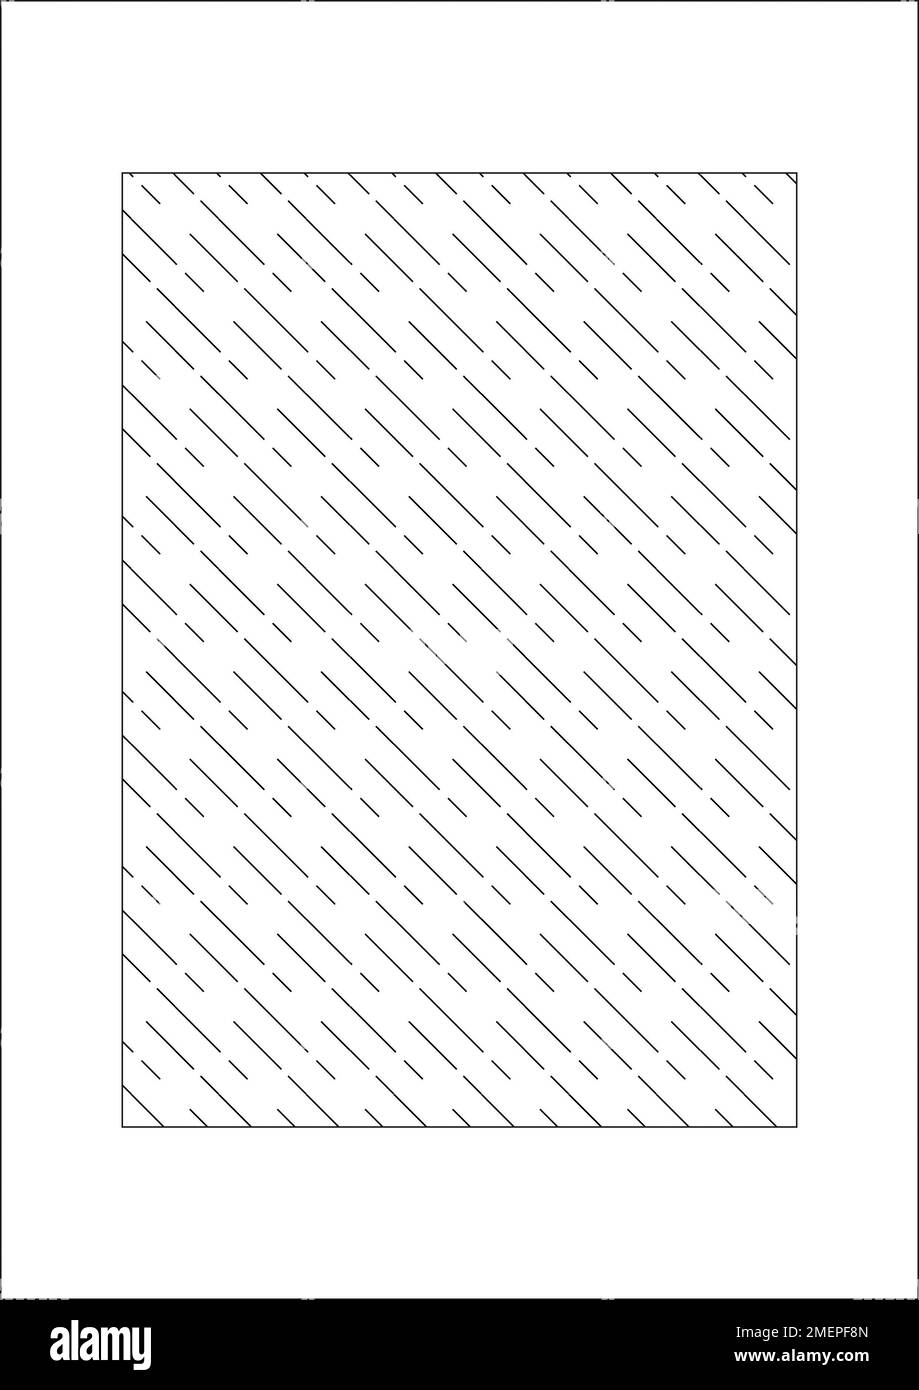 Motif d'arrière-plan avec lignes diagonales Banque D'Images